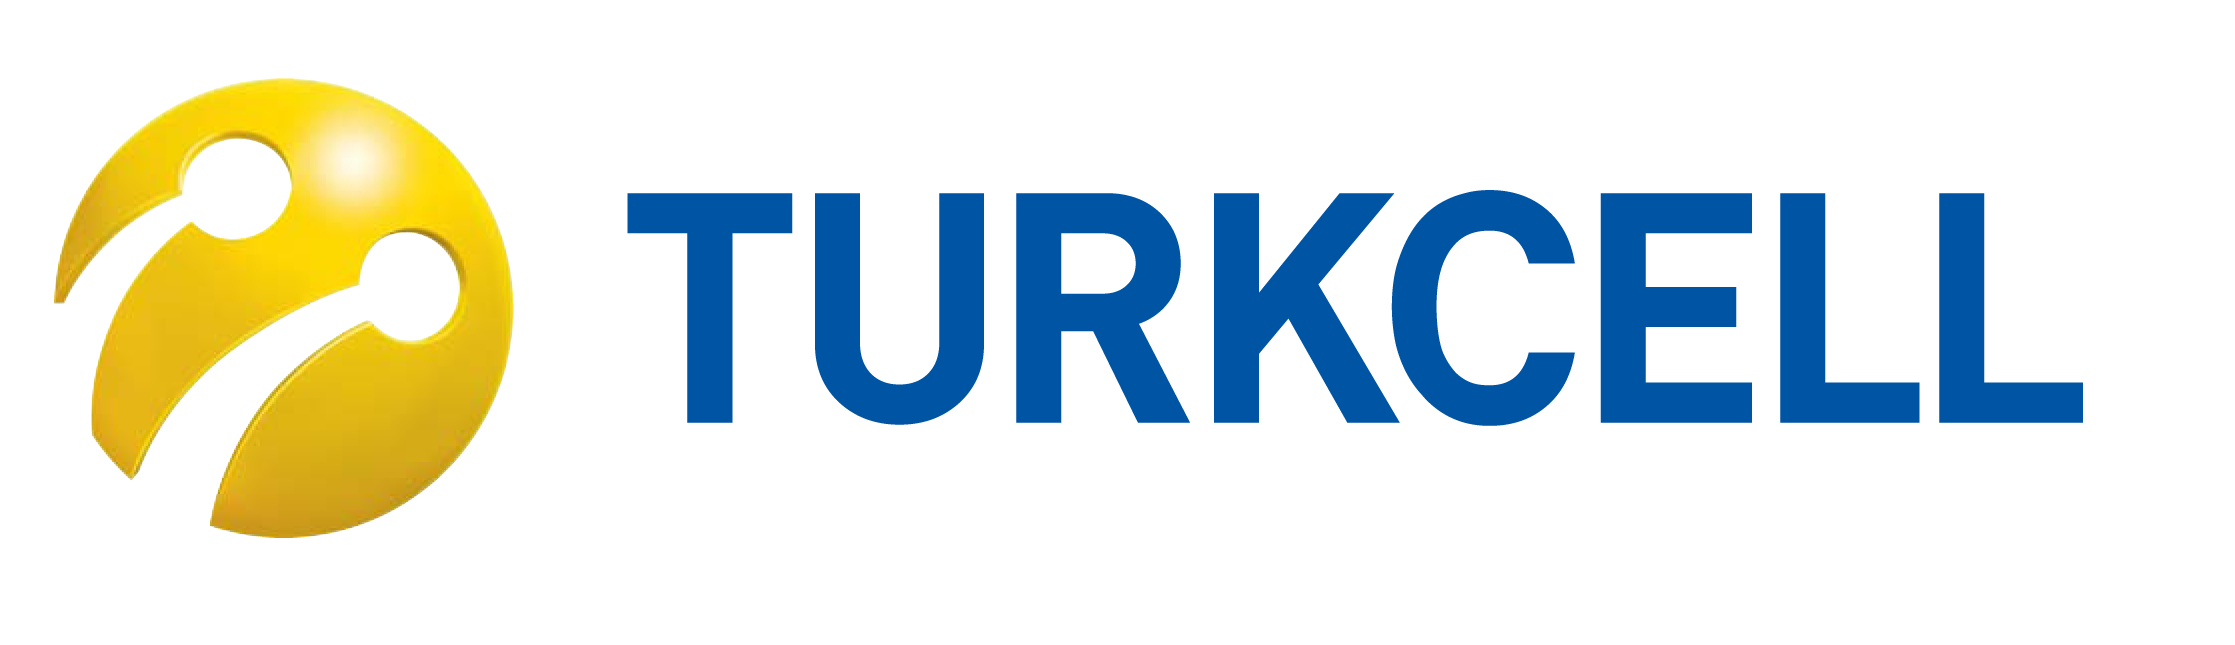 Turkcell Dergilik Uygulamasından Hediye Haftalık 1GB Kampanyası